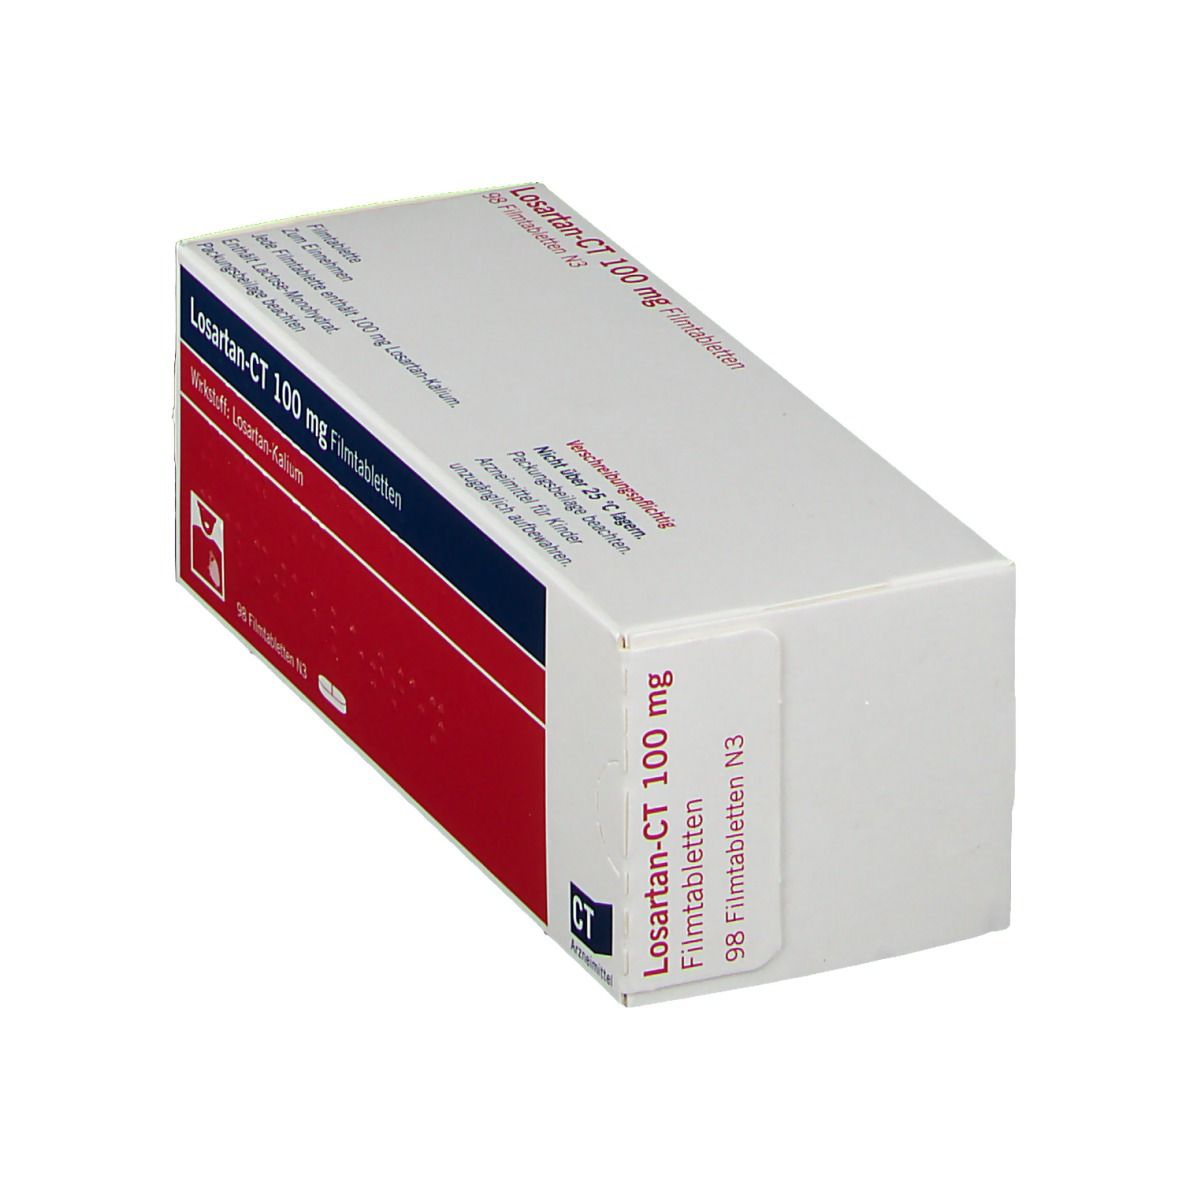 Losartan-CT 100 mg